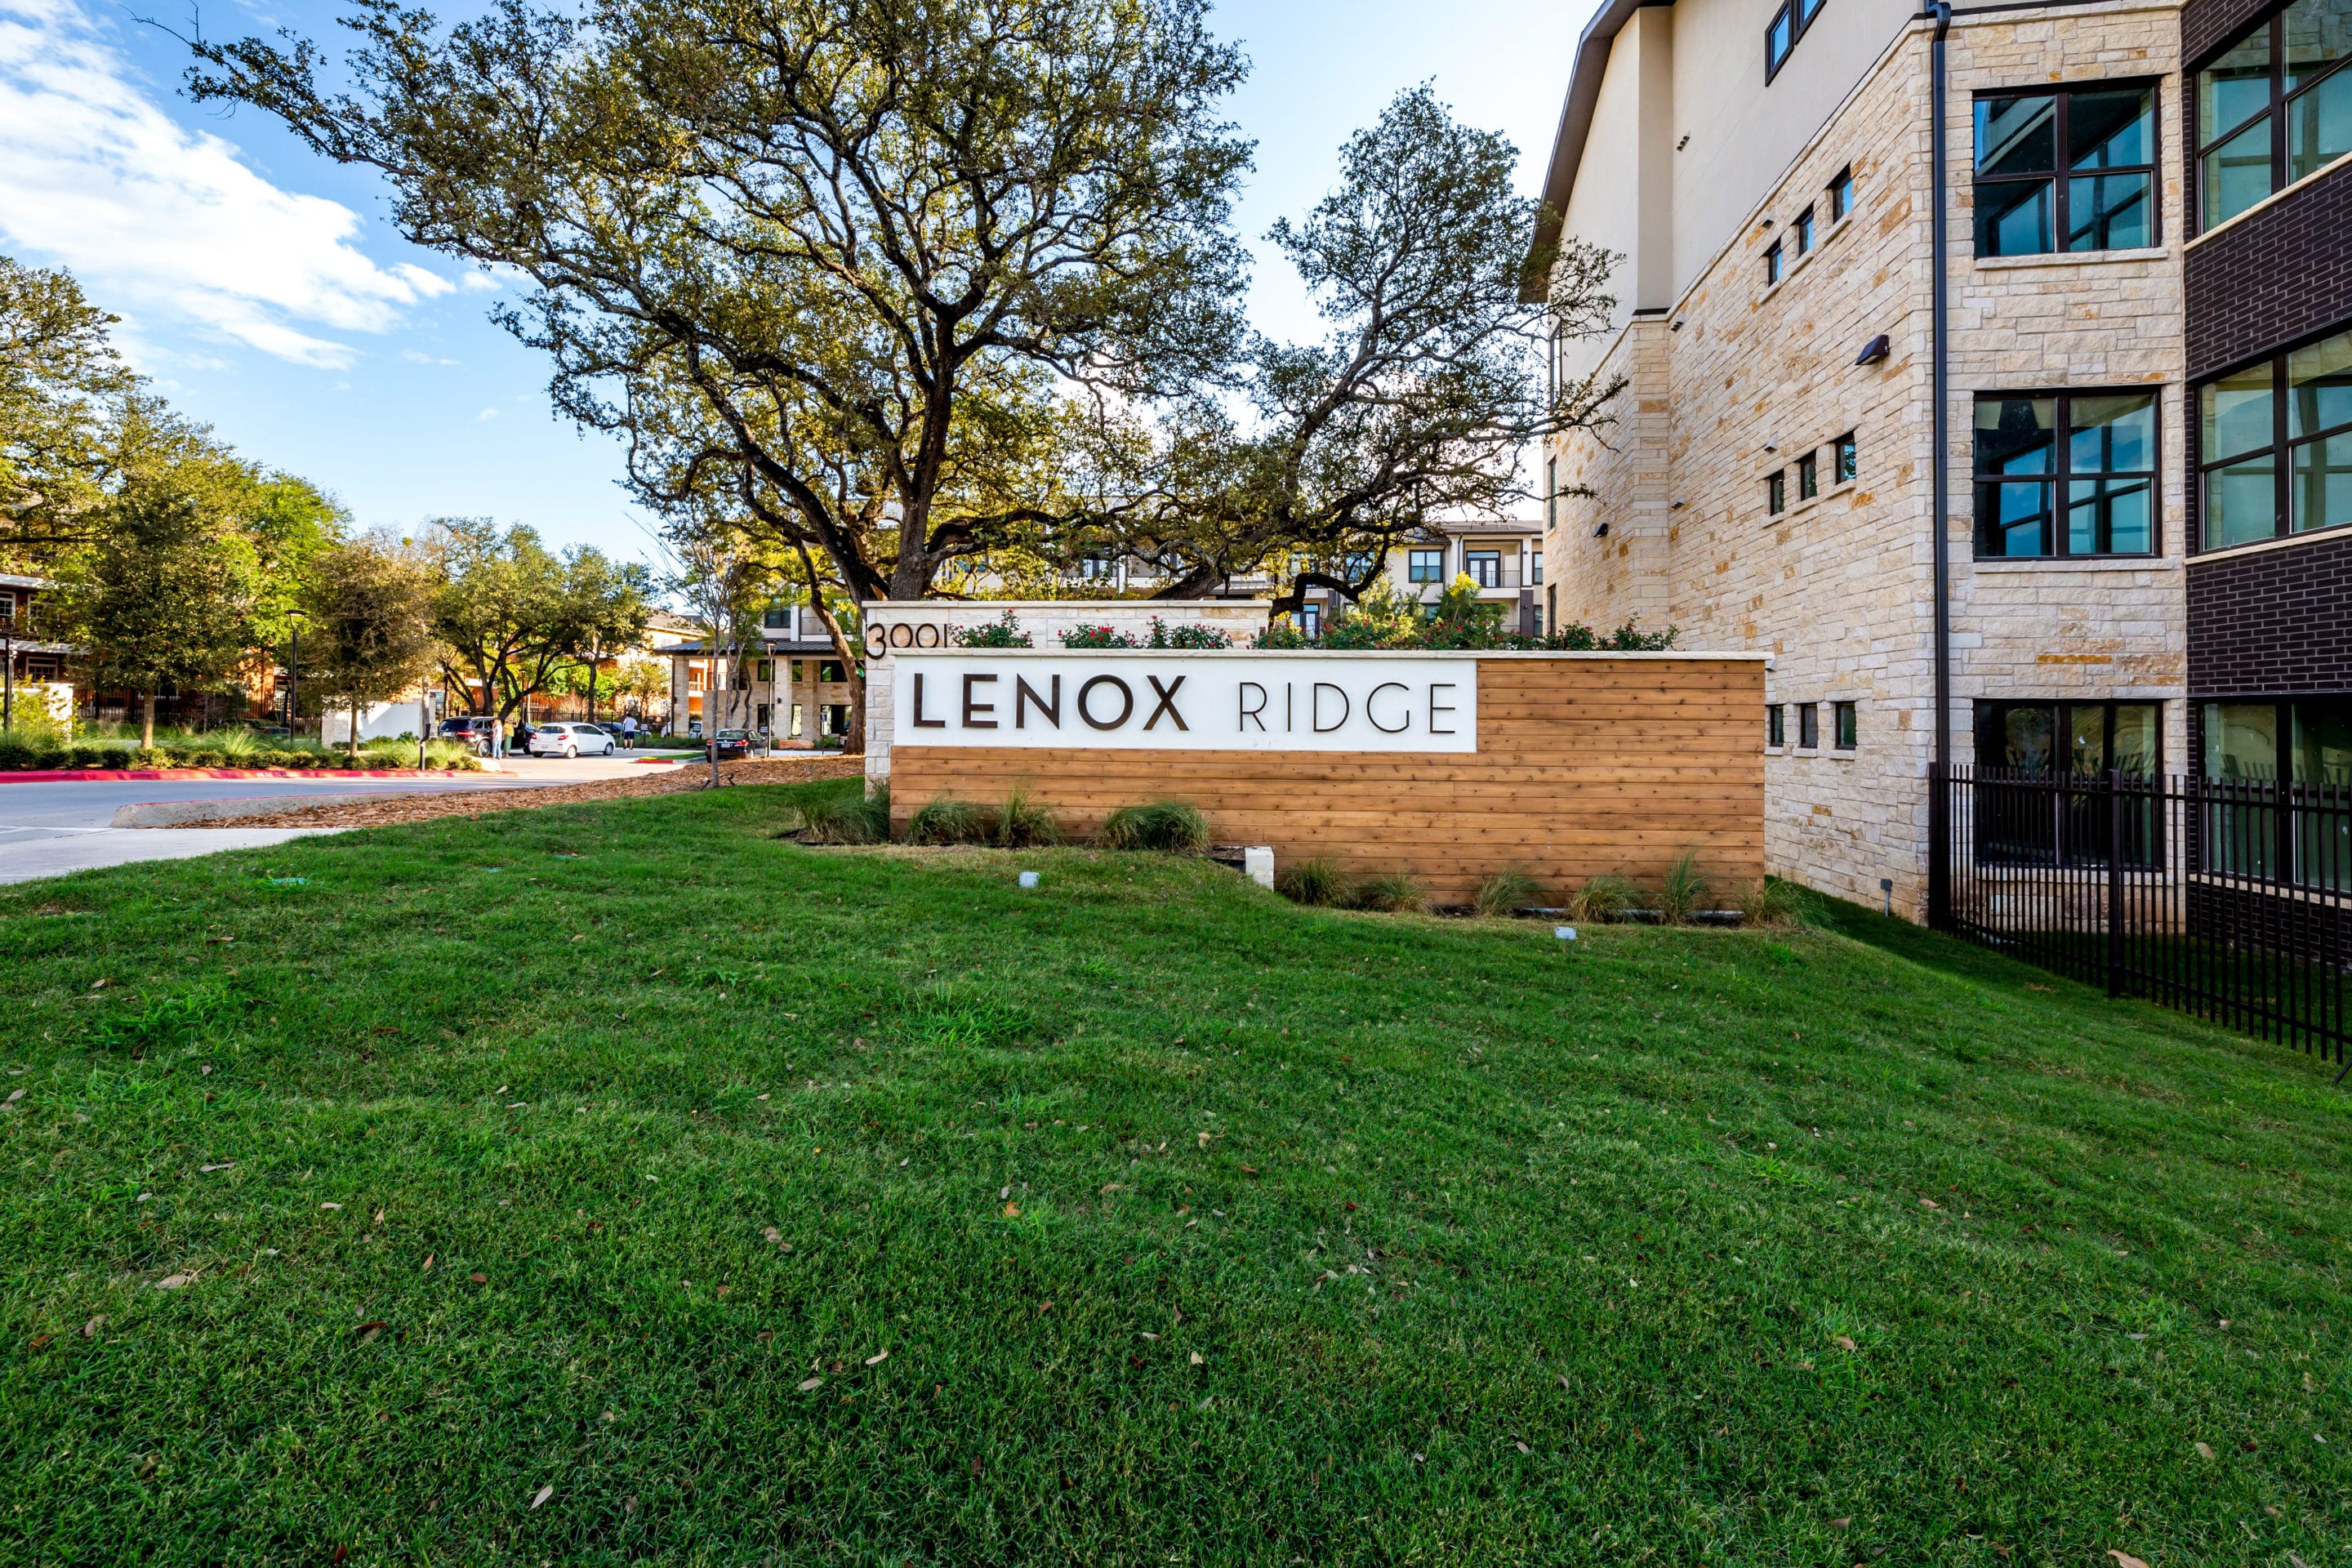 LenoxRidge Sign